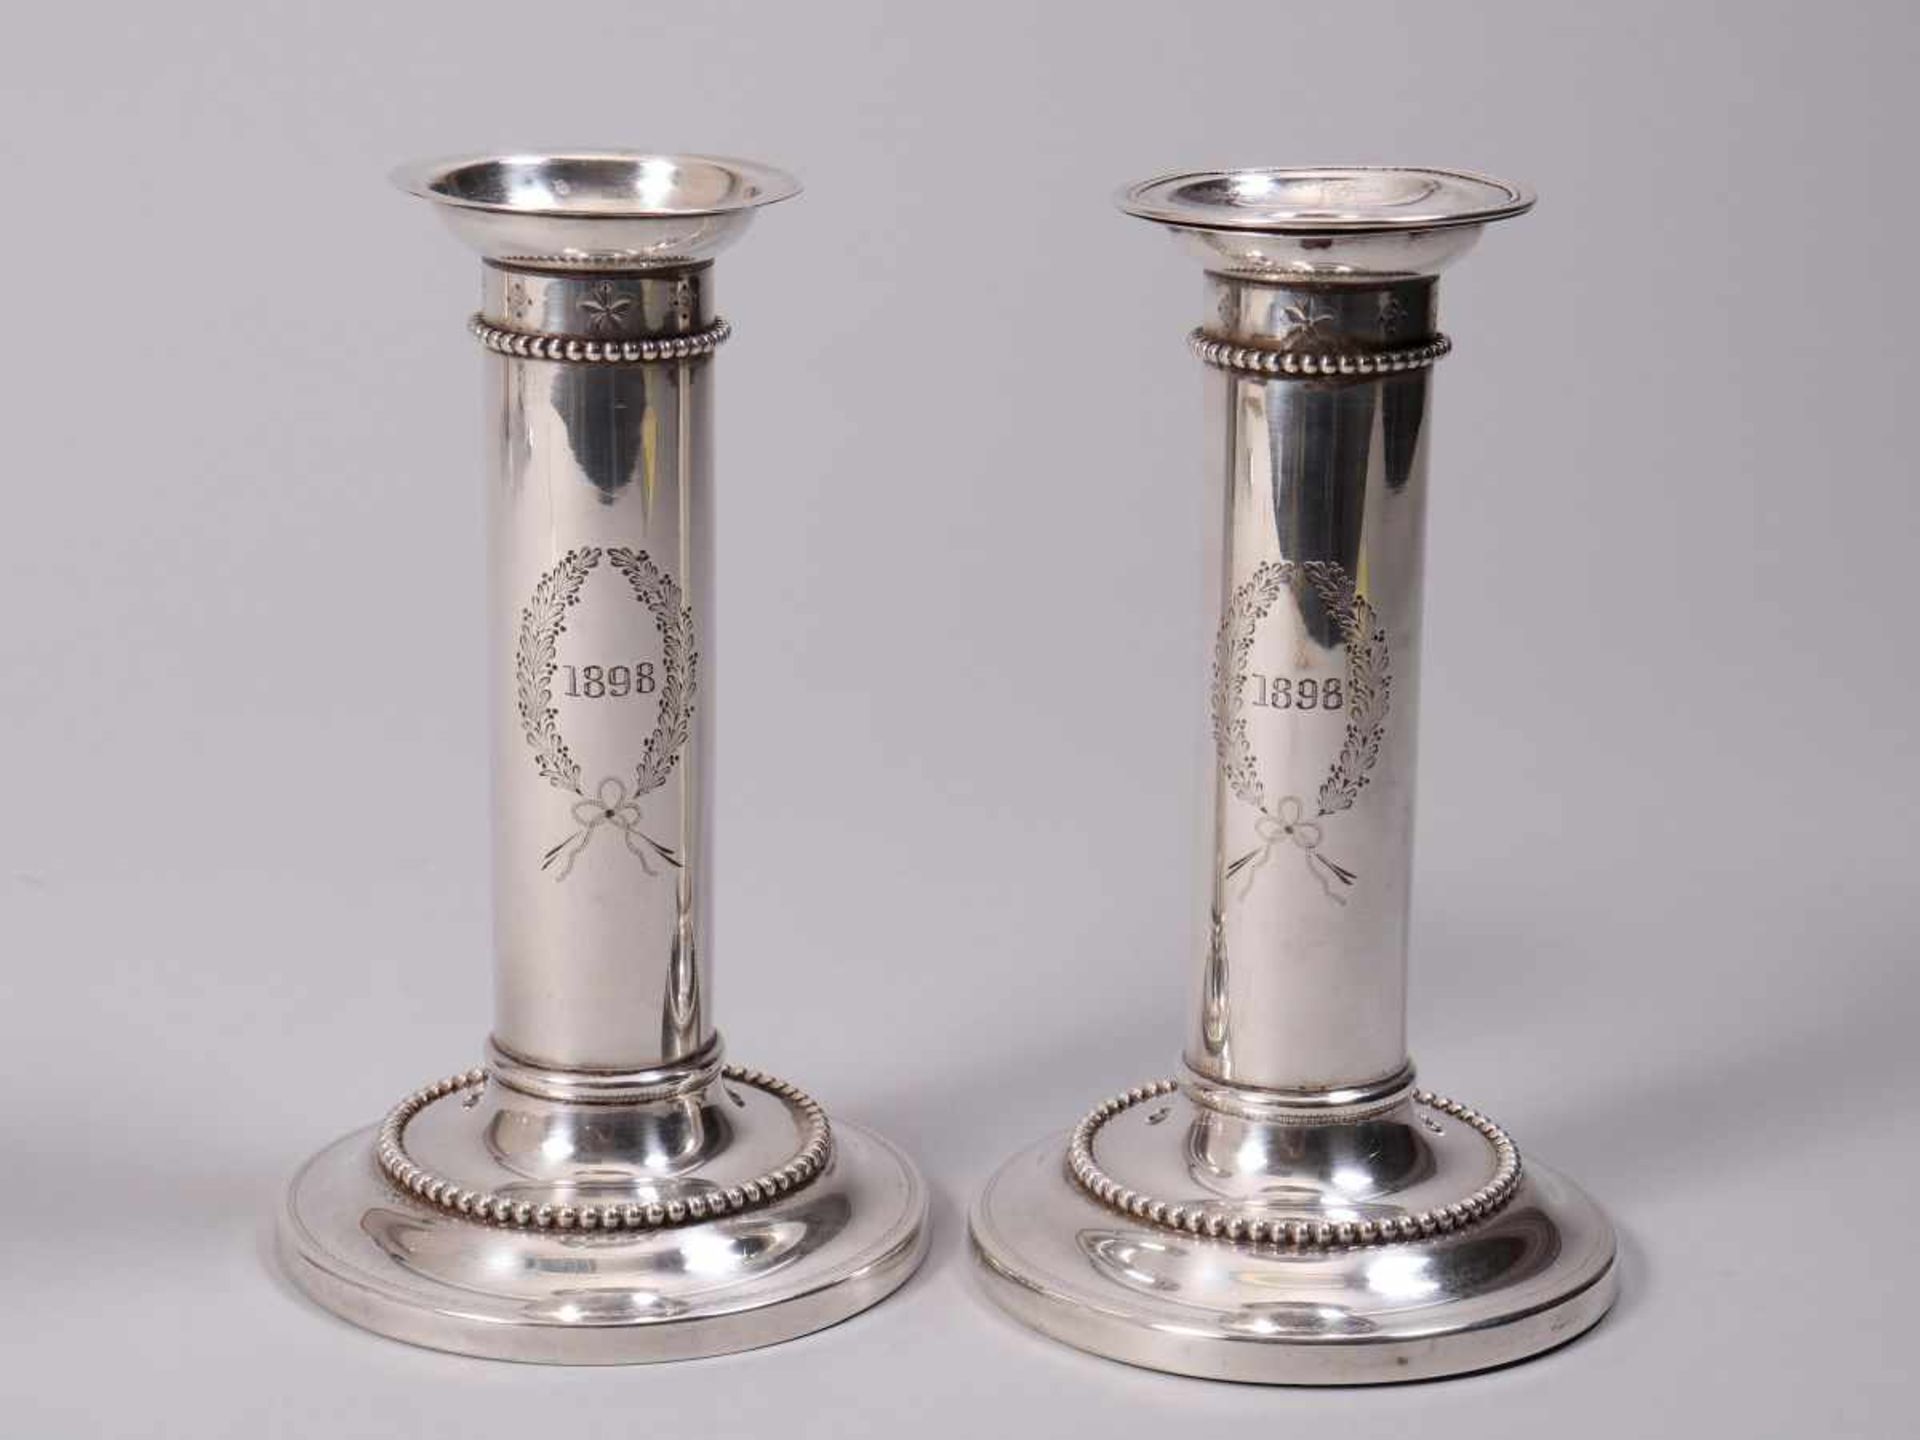 Paar Tafelleuchter925er Silber, Goodnow & Jenks, Boston, um 1889, auf Rundfuß, zylindrischer - Image 2 of 4